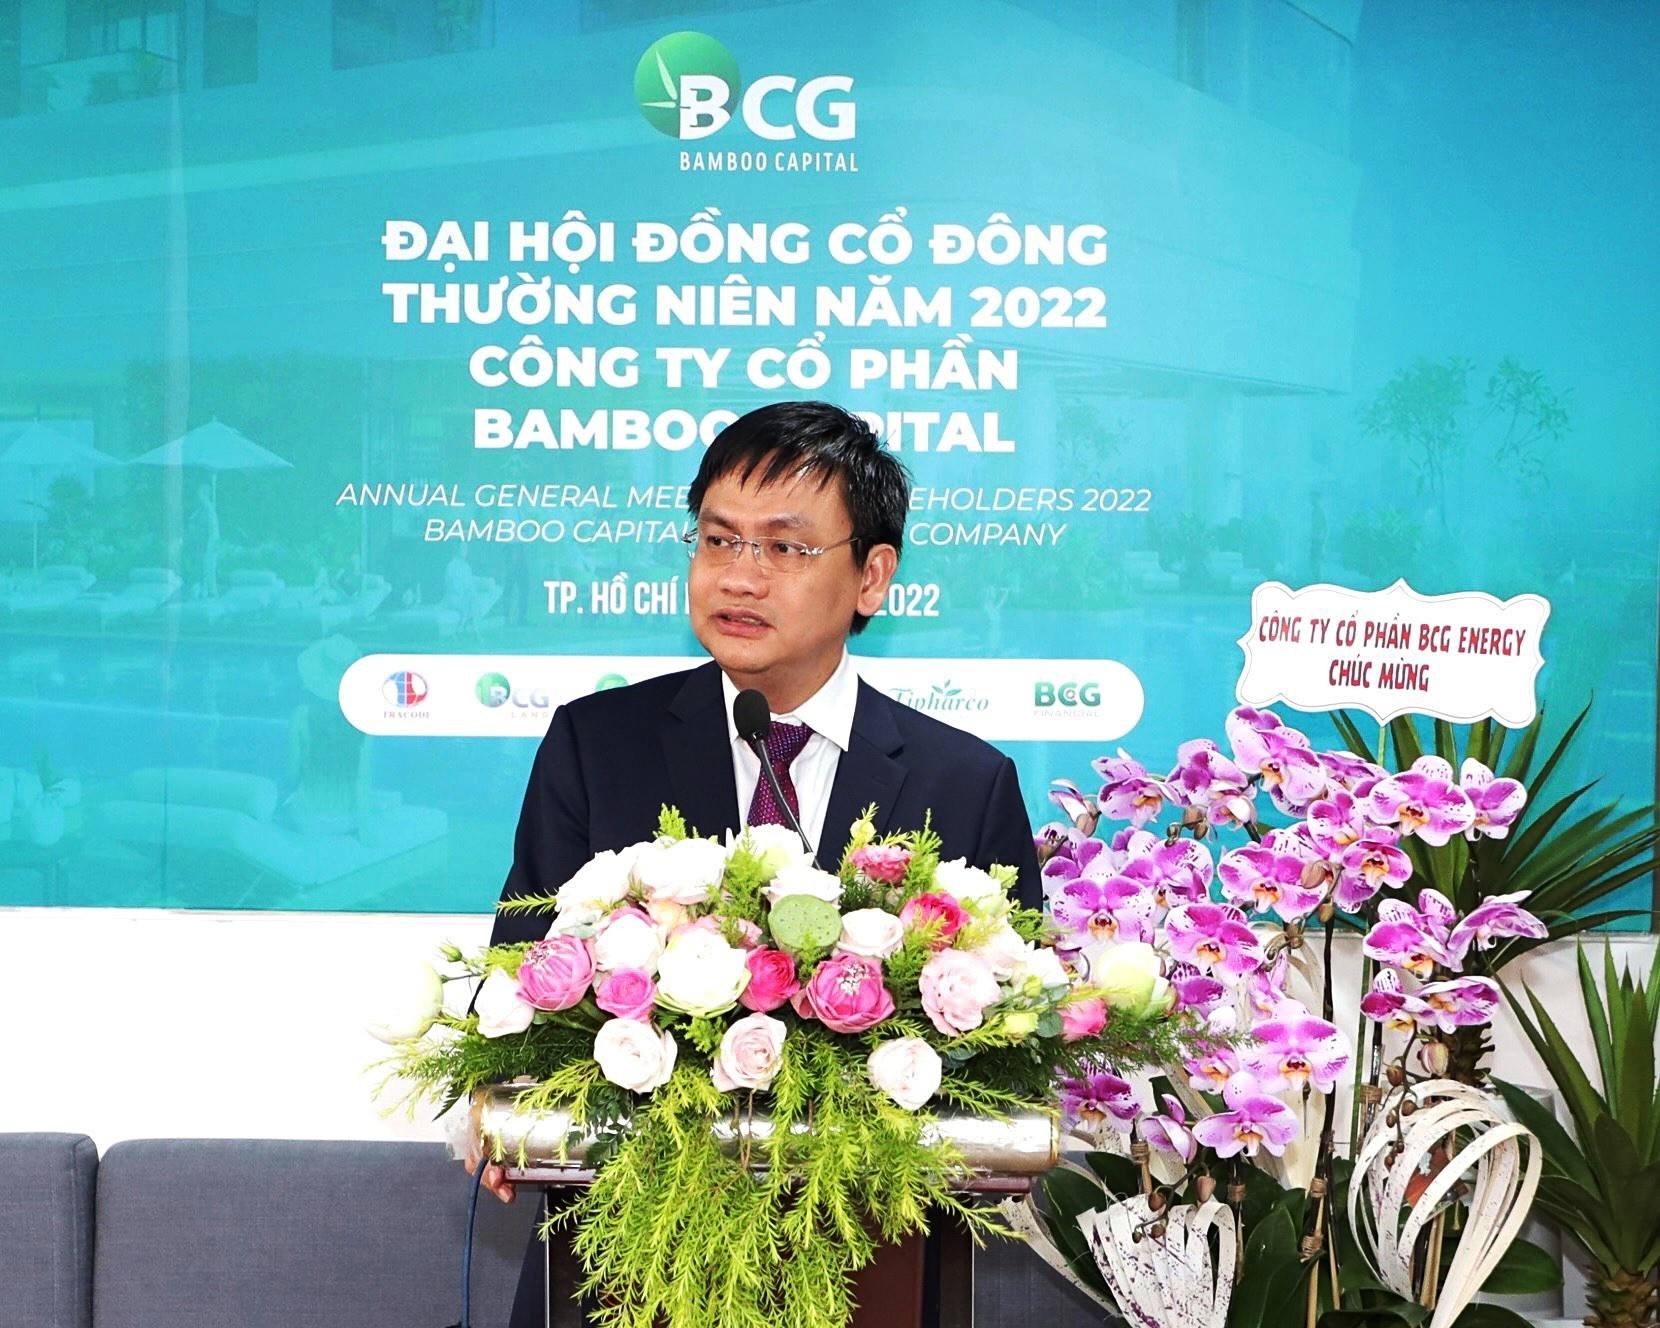 ĐHĐCĐ Bamboo Capital đặt mục tiêu tăng trưởng mạnh, nâng cao năng lực vốn và cải thiện cơ cấu tài chính